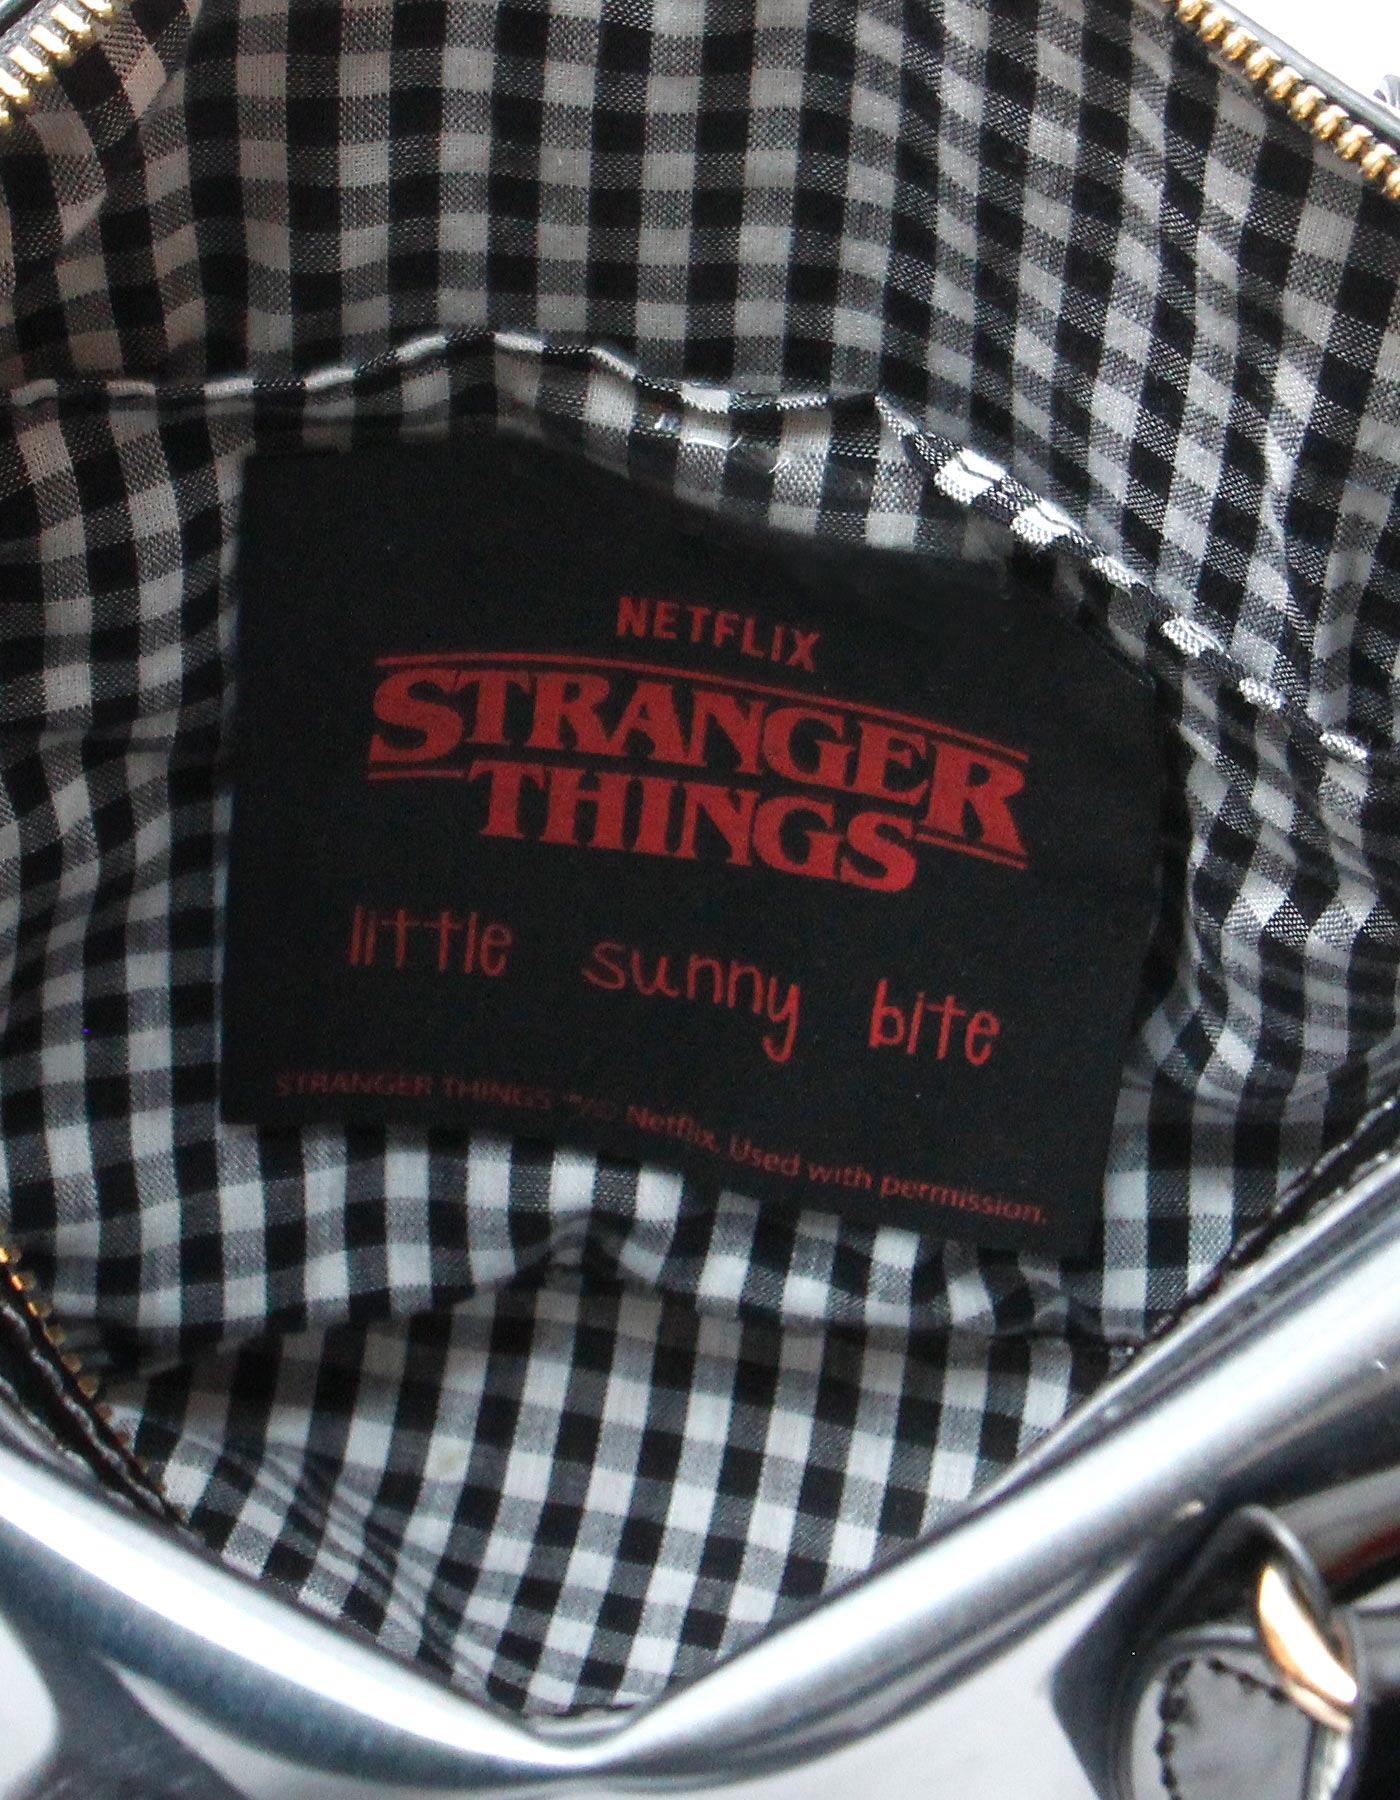 STRANGER THINGS × little sunny bite Eleven pvc bag / PHOTO